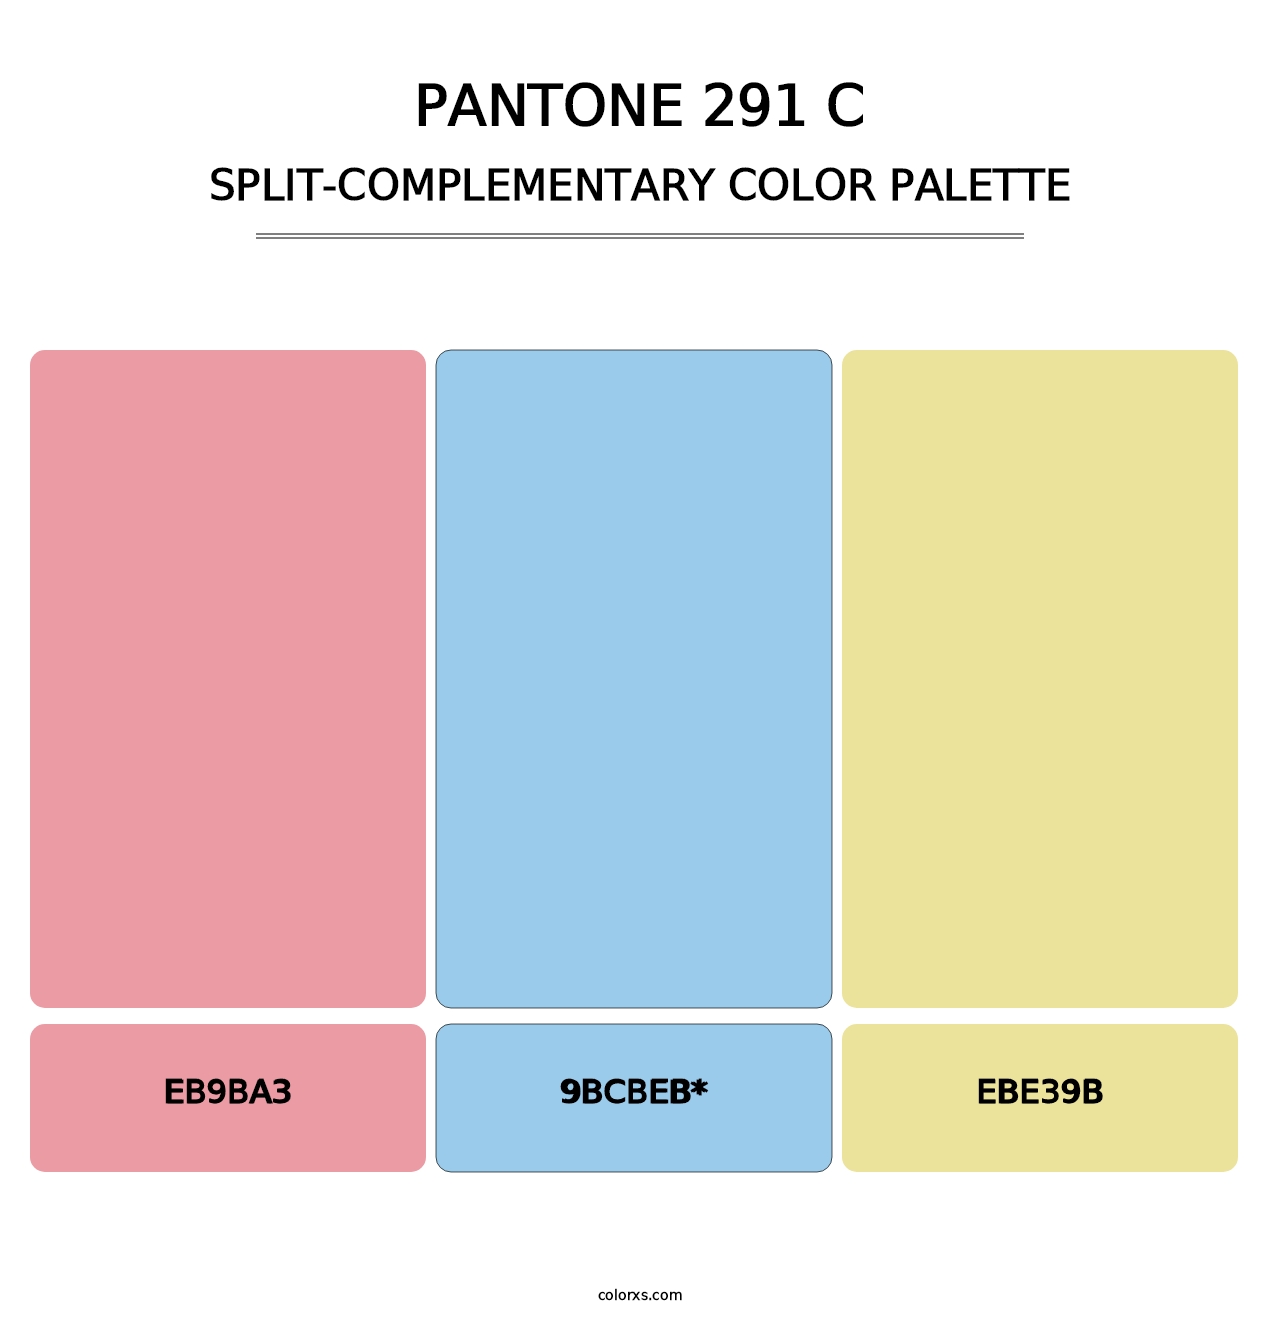 PANTONE 291 C - Split-Complementary Color Palette